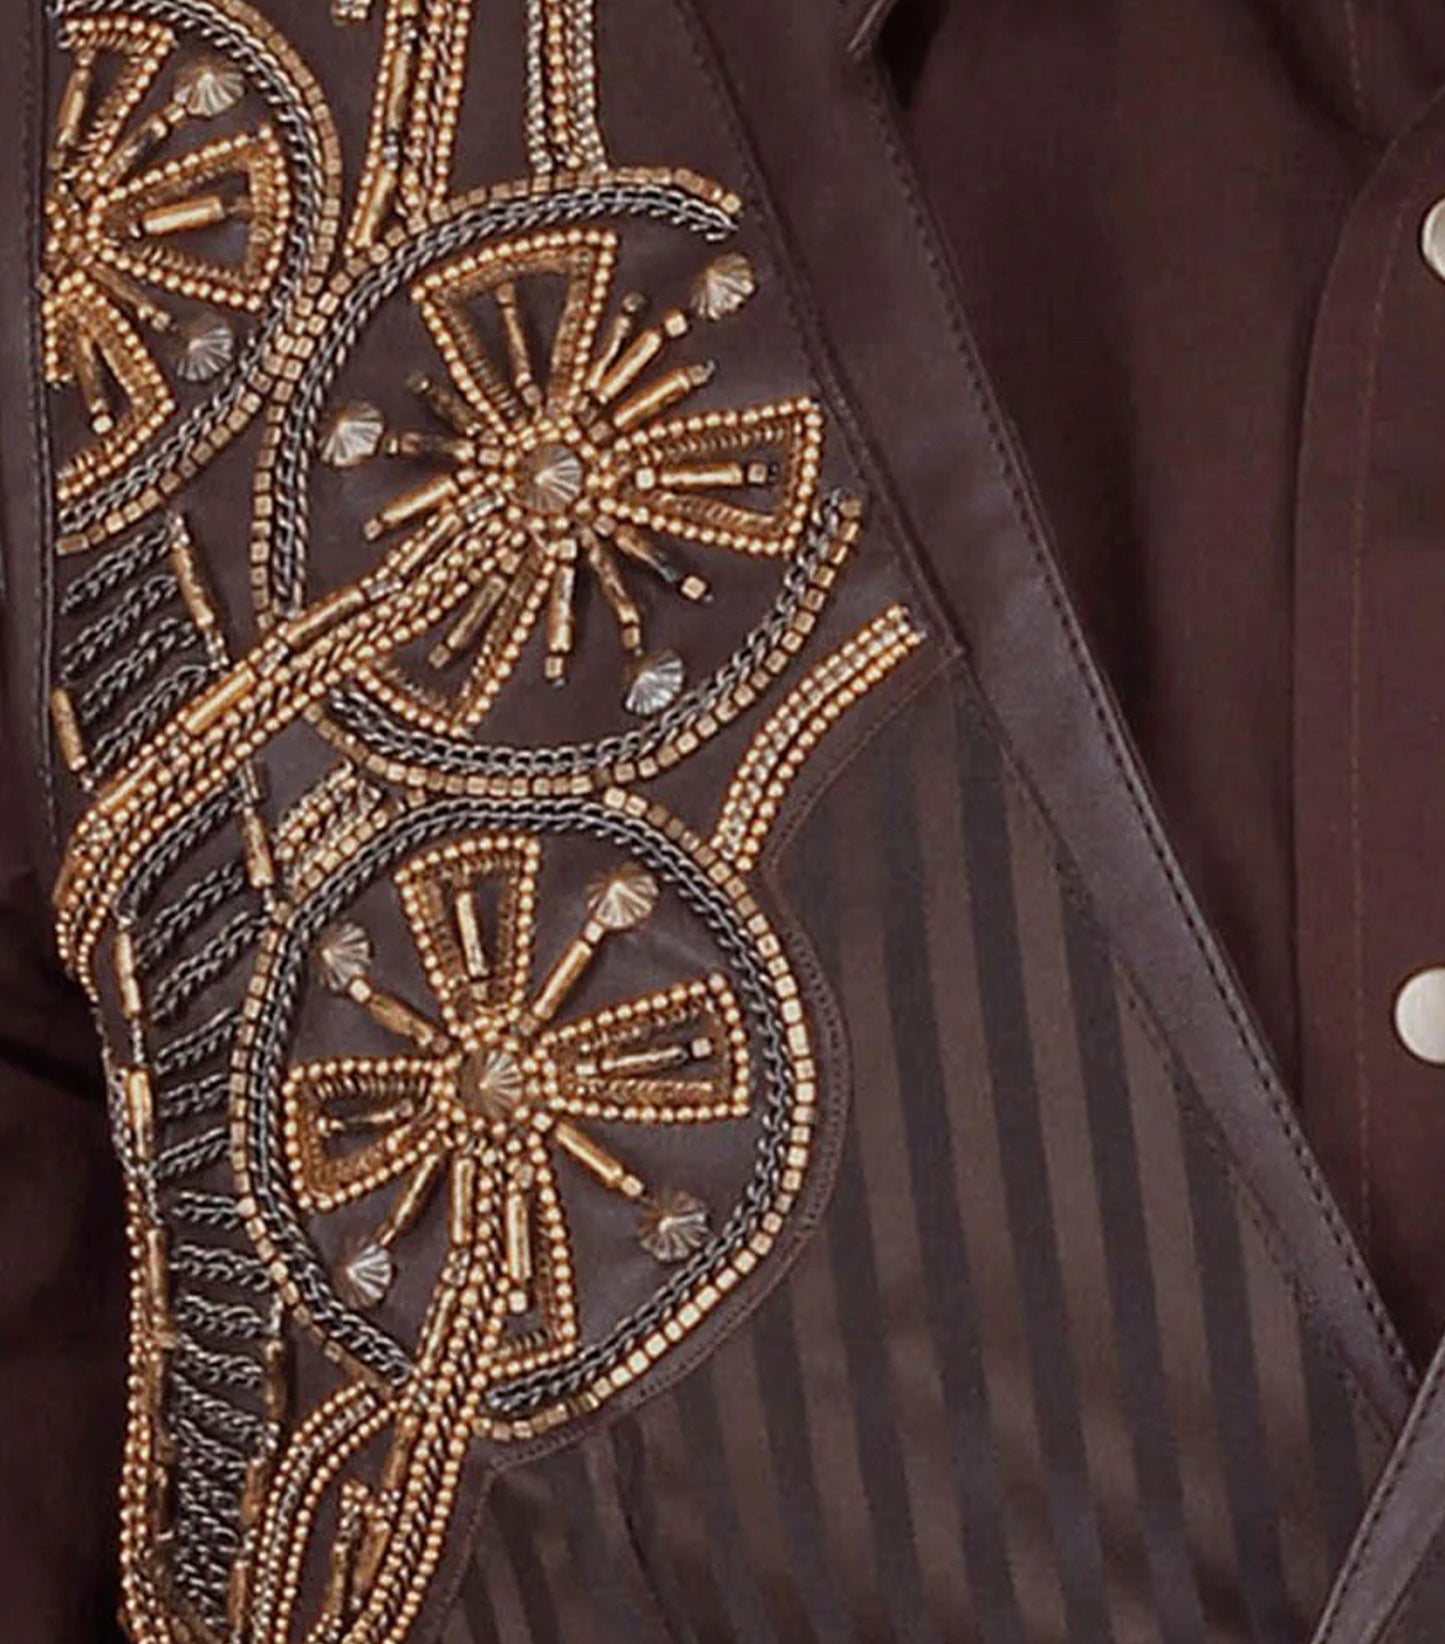 Steampunk Embroidered Men's Waist Coat